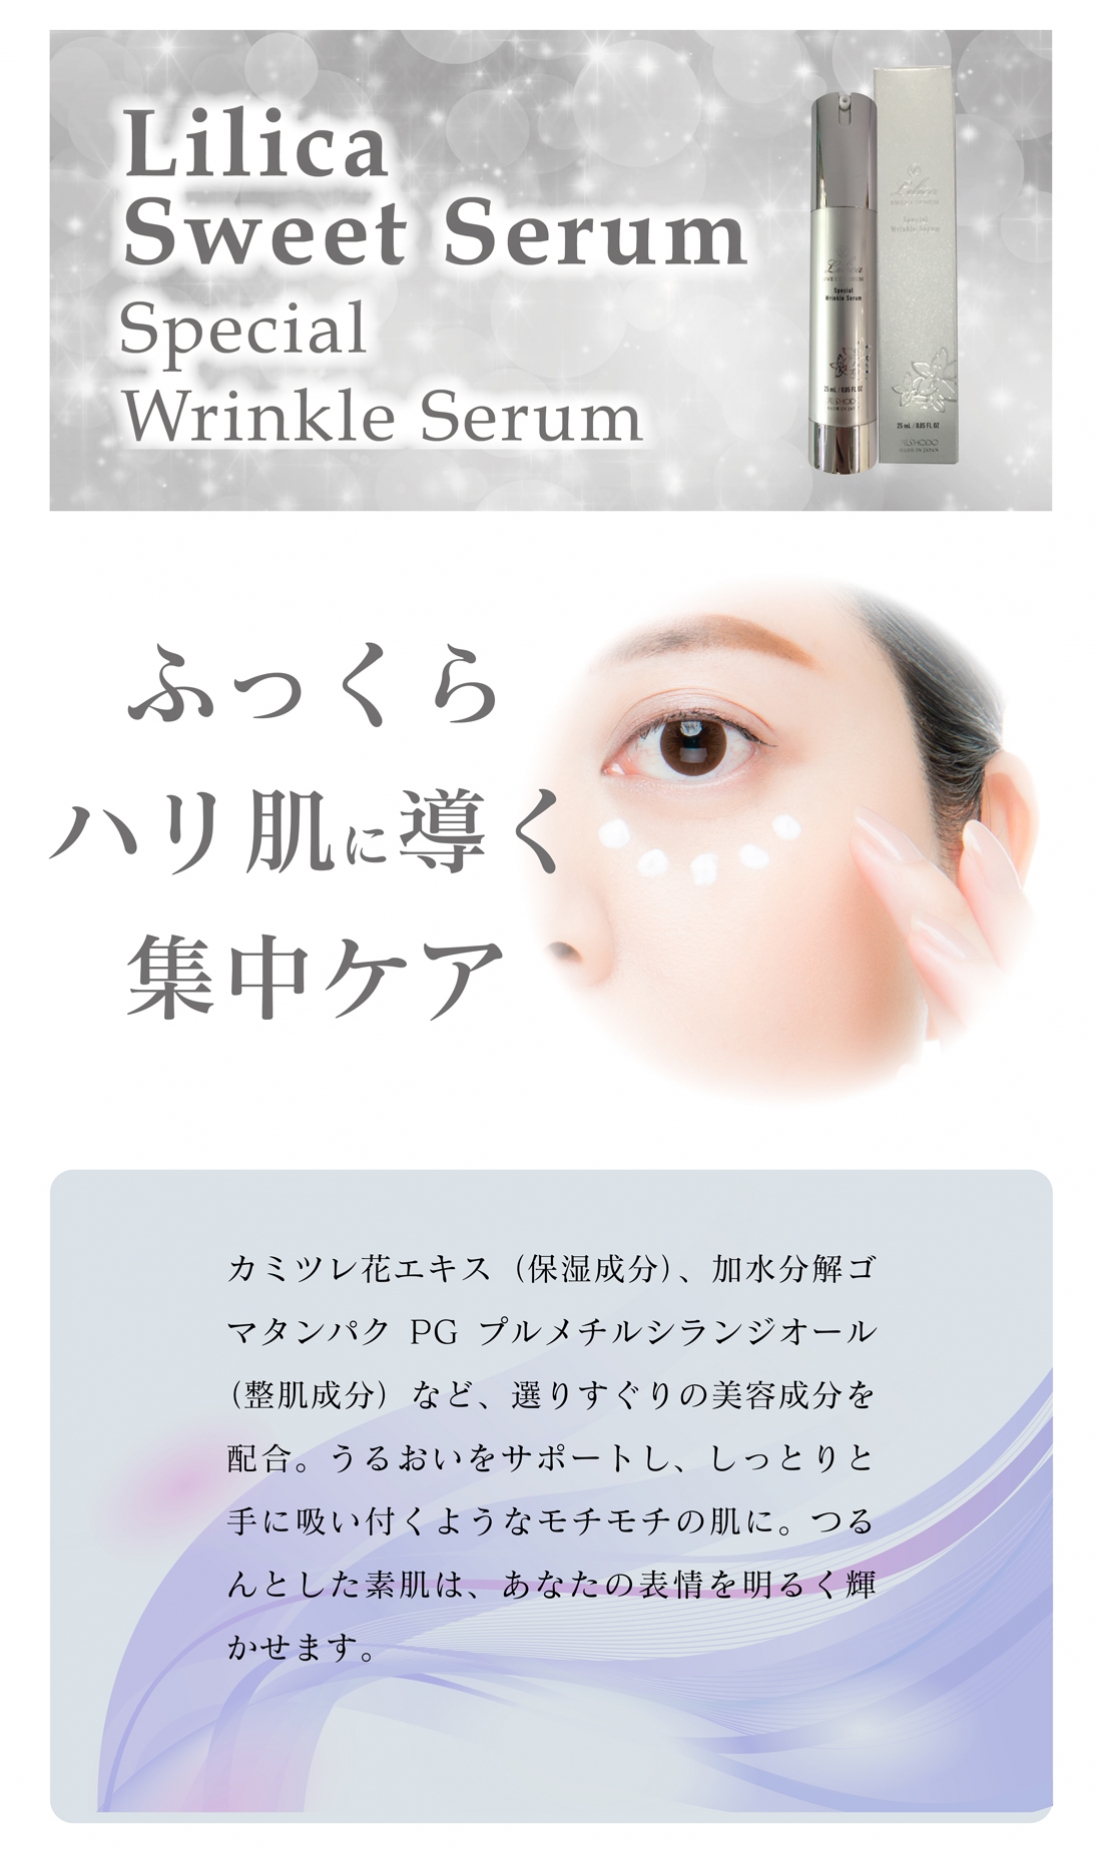 リリカスウィートセラム スペシャルリンクルセラム（リリカコンセントレートクリーム）
Lilica SWEET SERUM Special Wrinkle Serum（Lilica Concentrate Cream）